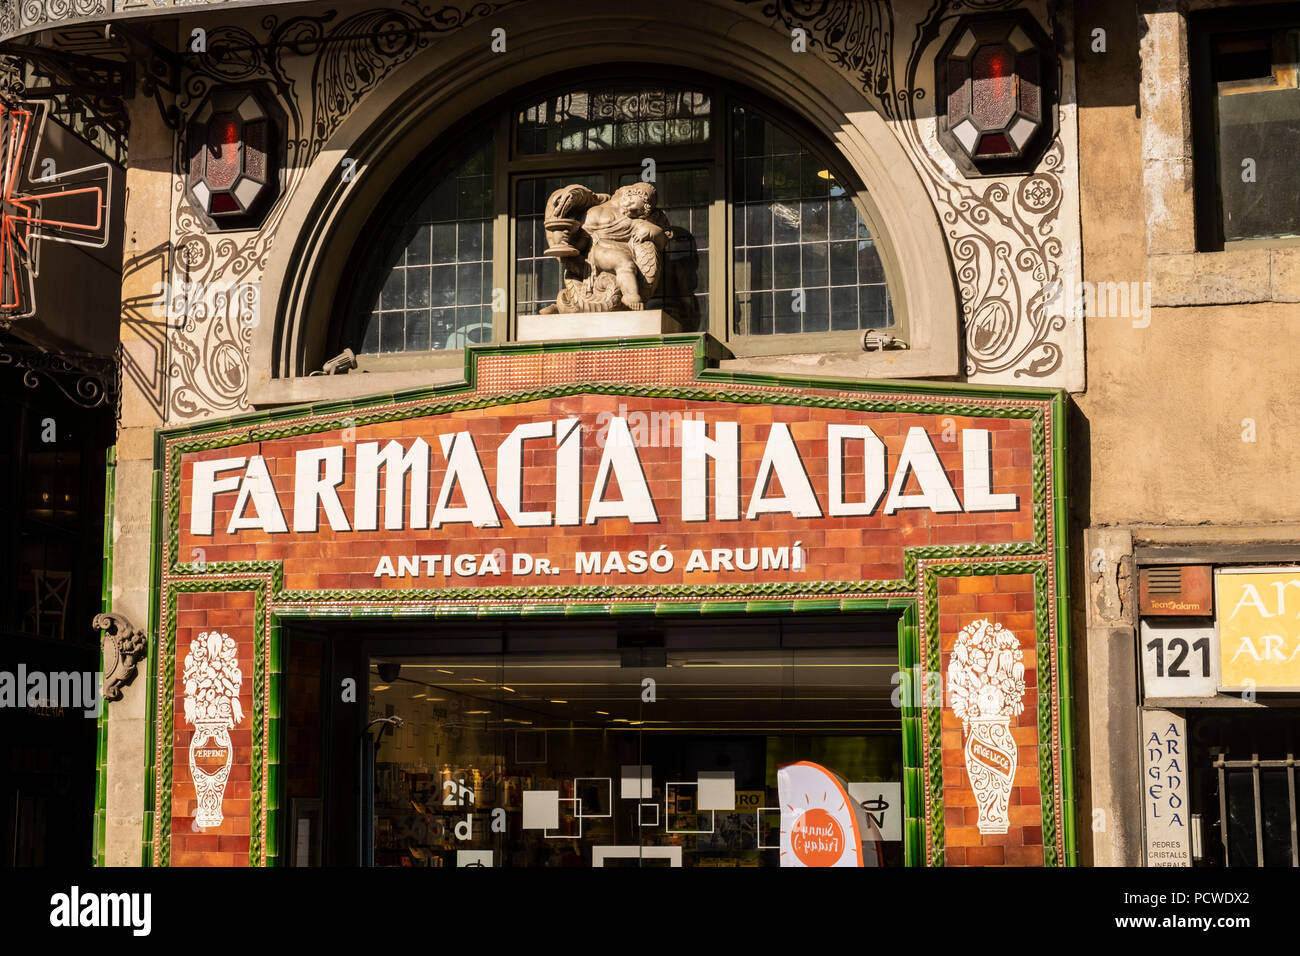 Farmacia Nadal, pharmacie, chimistes shop sur la Rambla, sol carrelé dans un style art déco, Barcelone, Espagne Banque D'Images